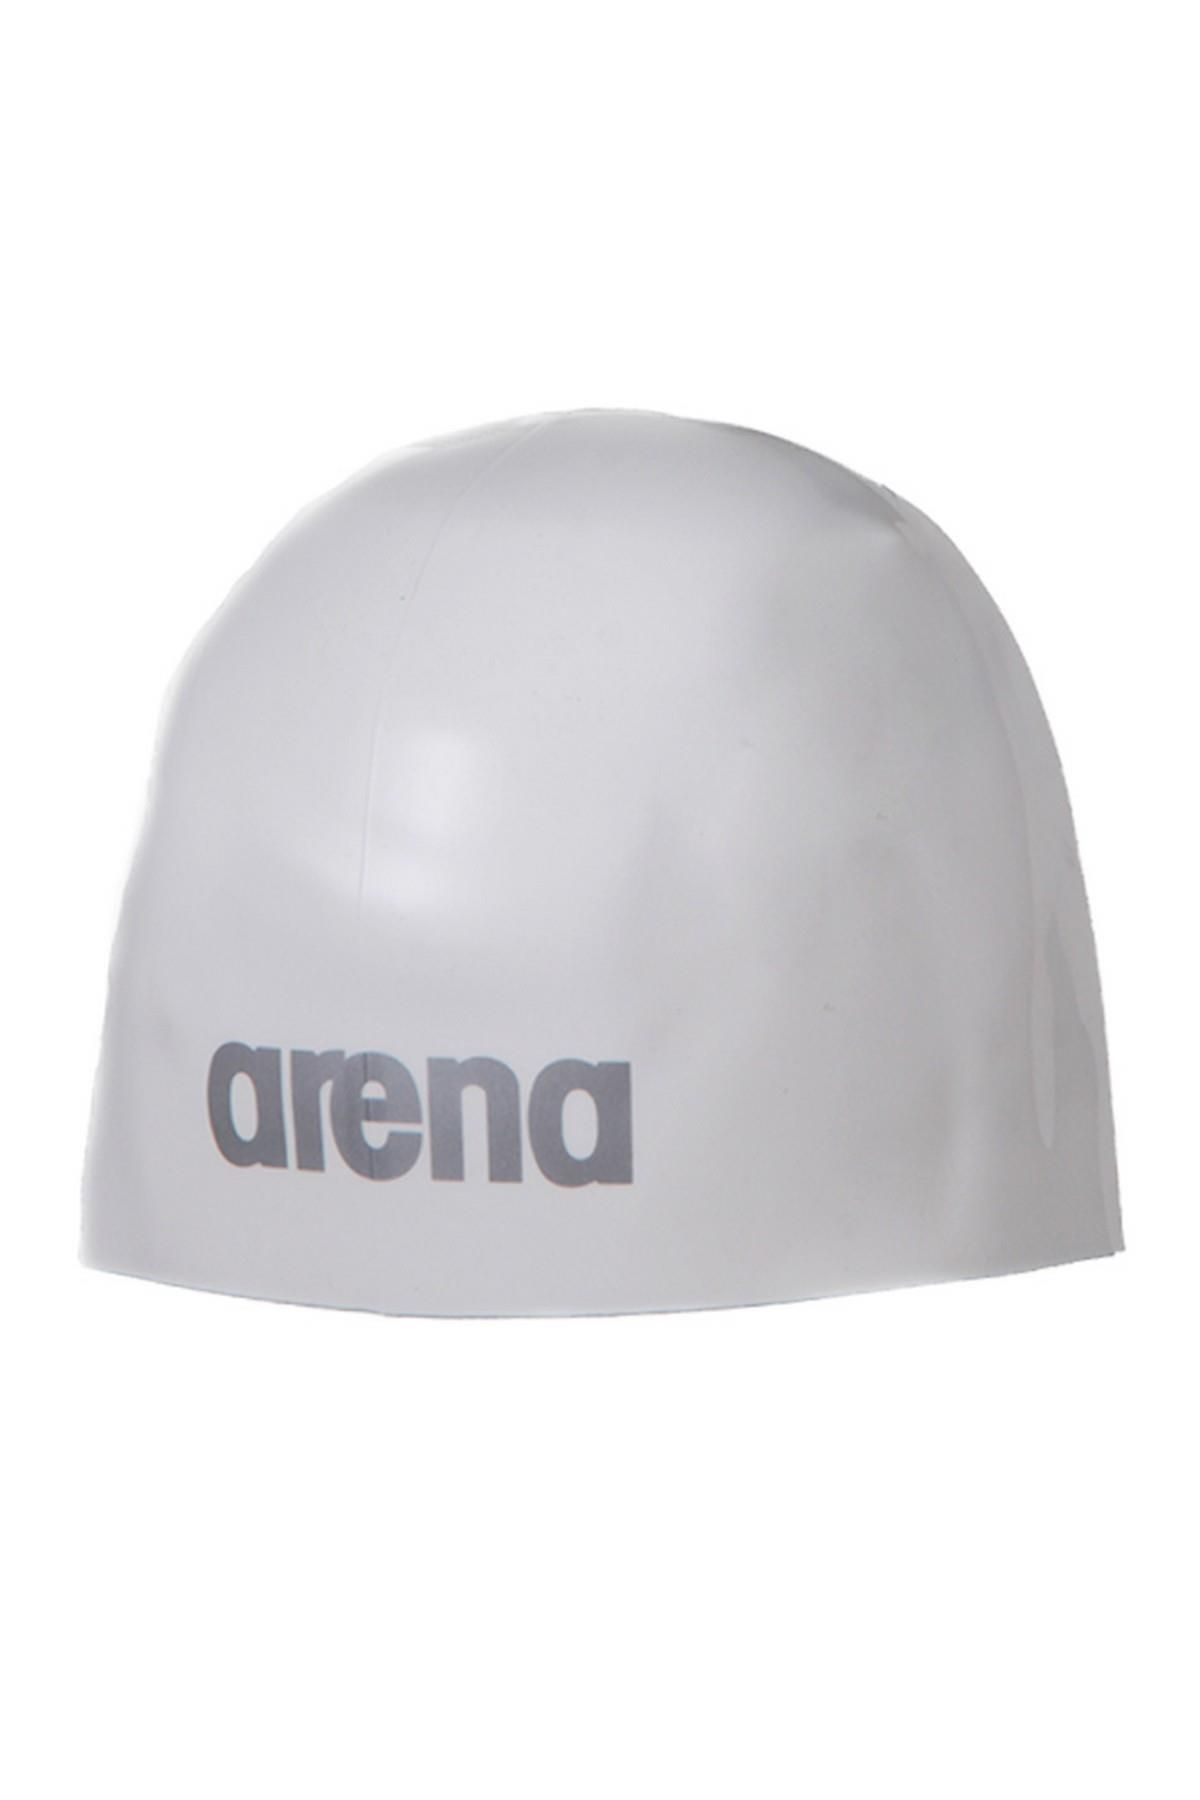 Arena 91656 - 3d Ultra Yarış Yüzücü Silikon Bone